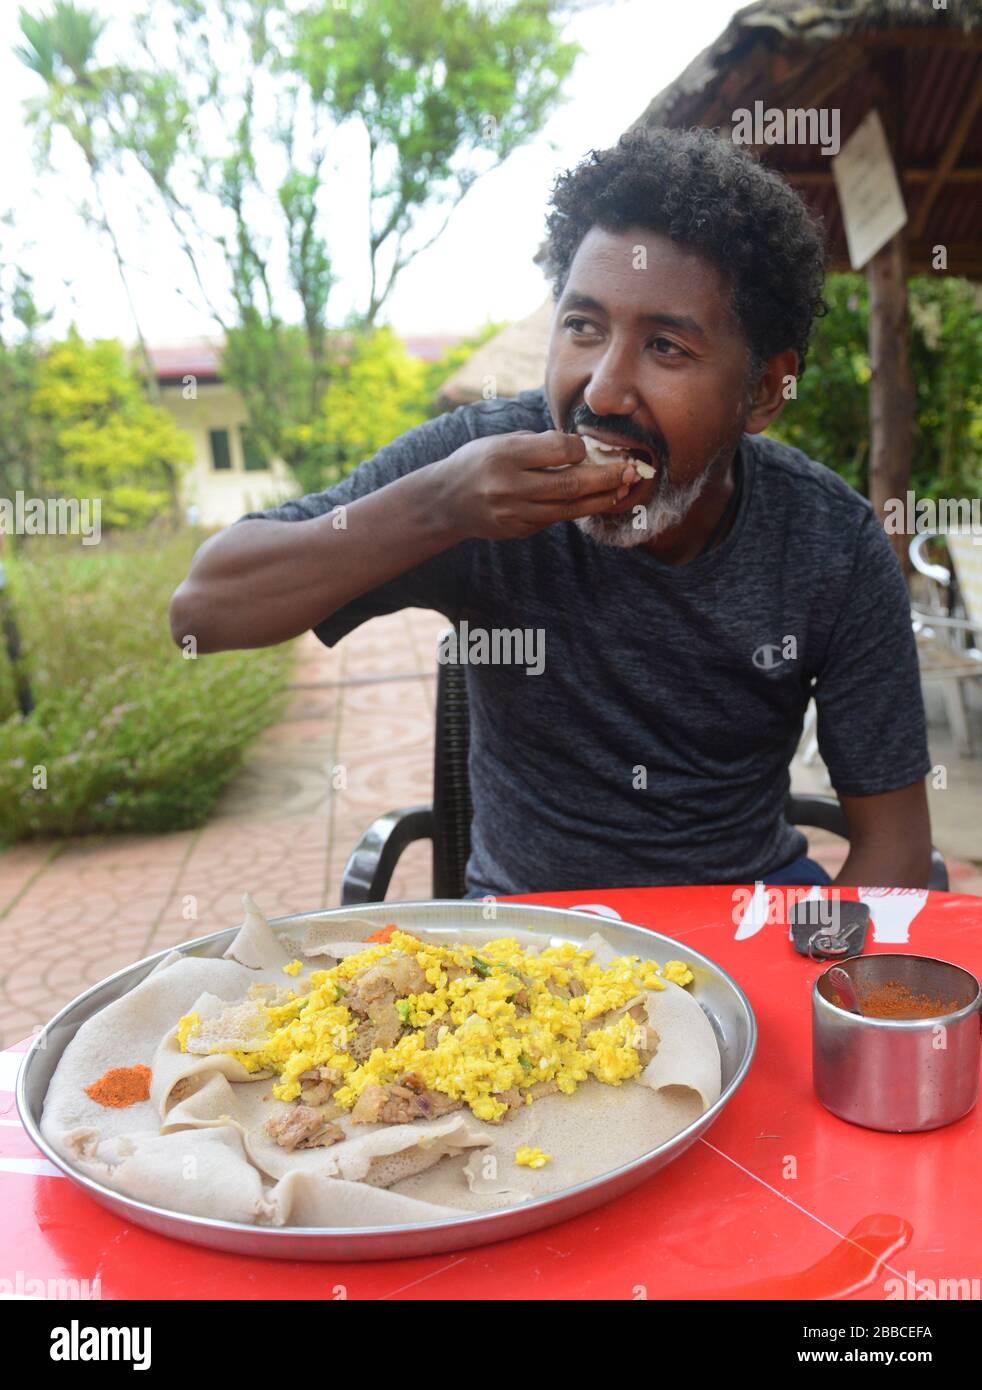 El firfir con huevos revueltos es un desayuno popular en Etiopía. Foto de stock